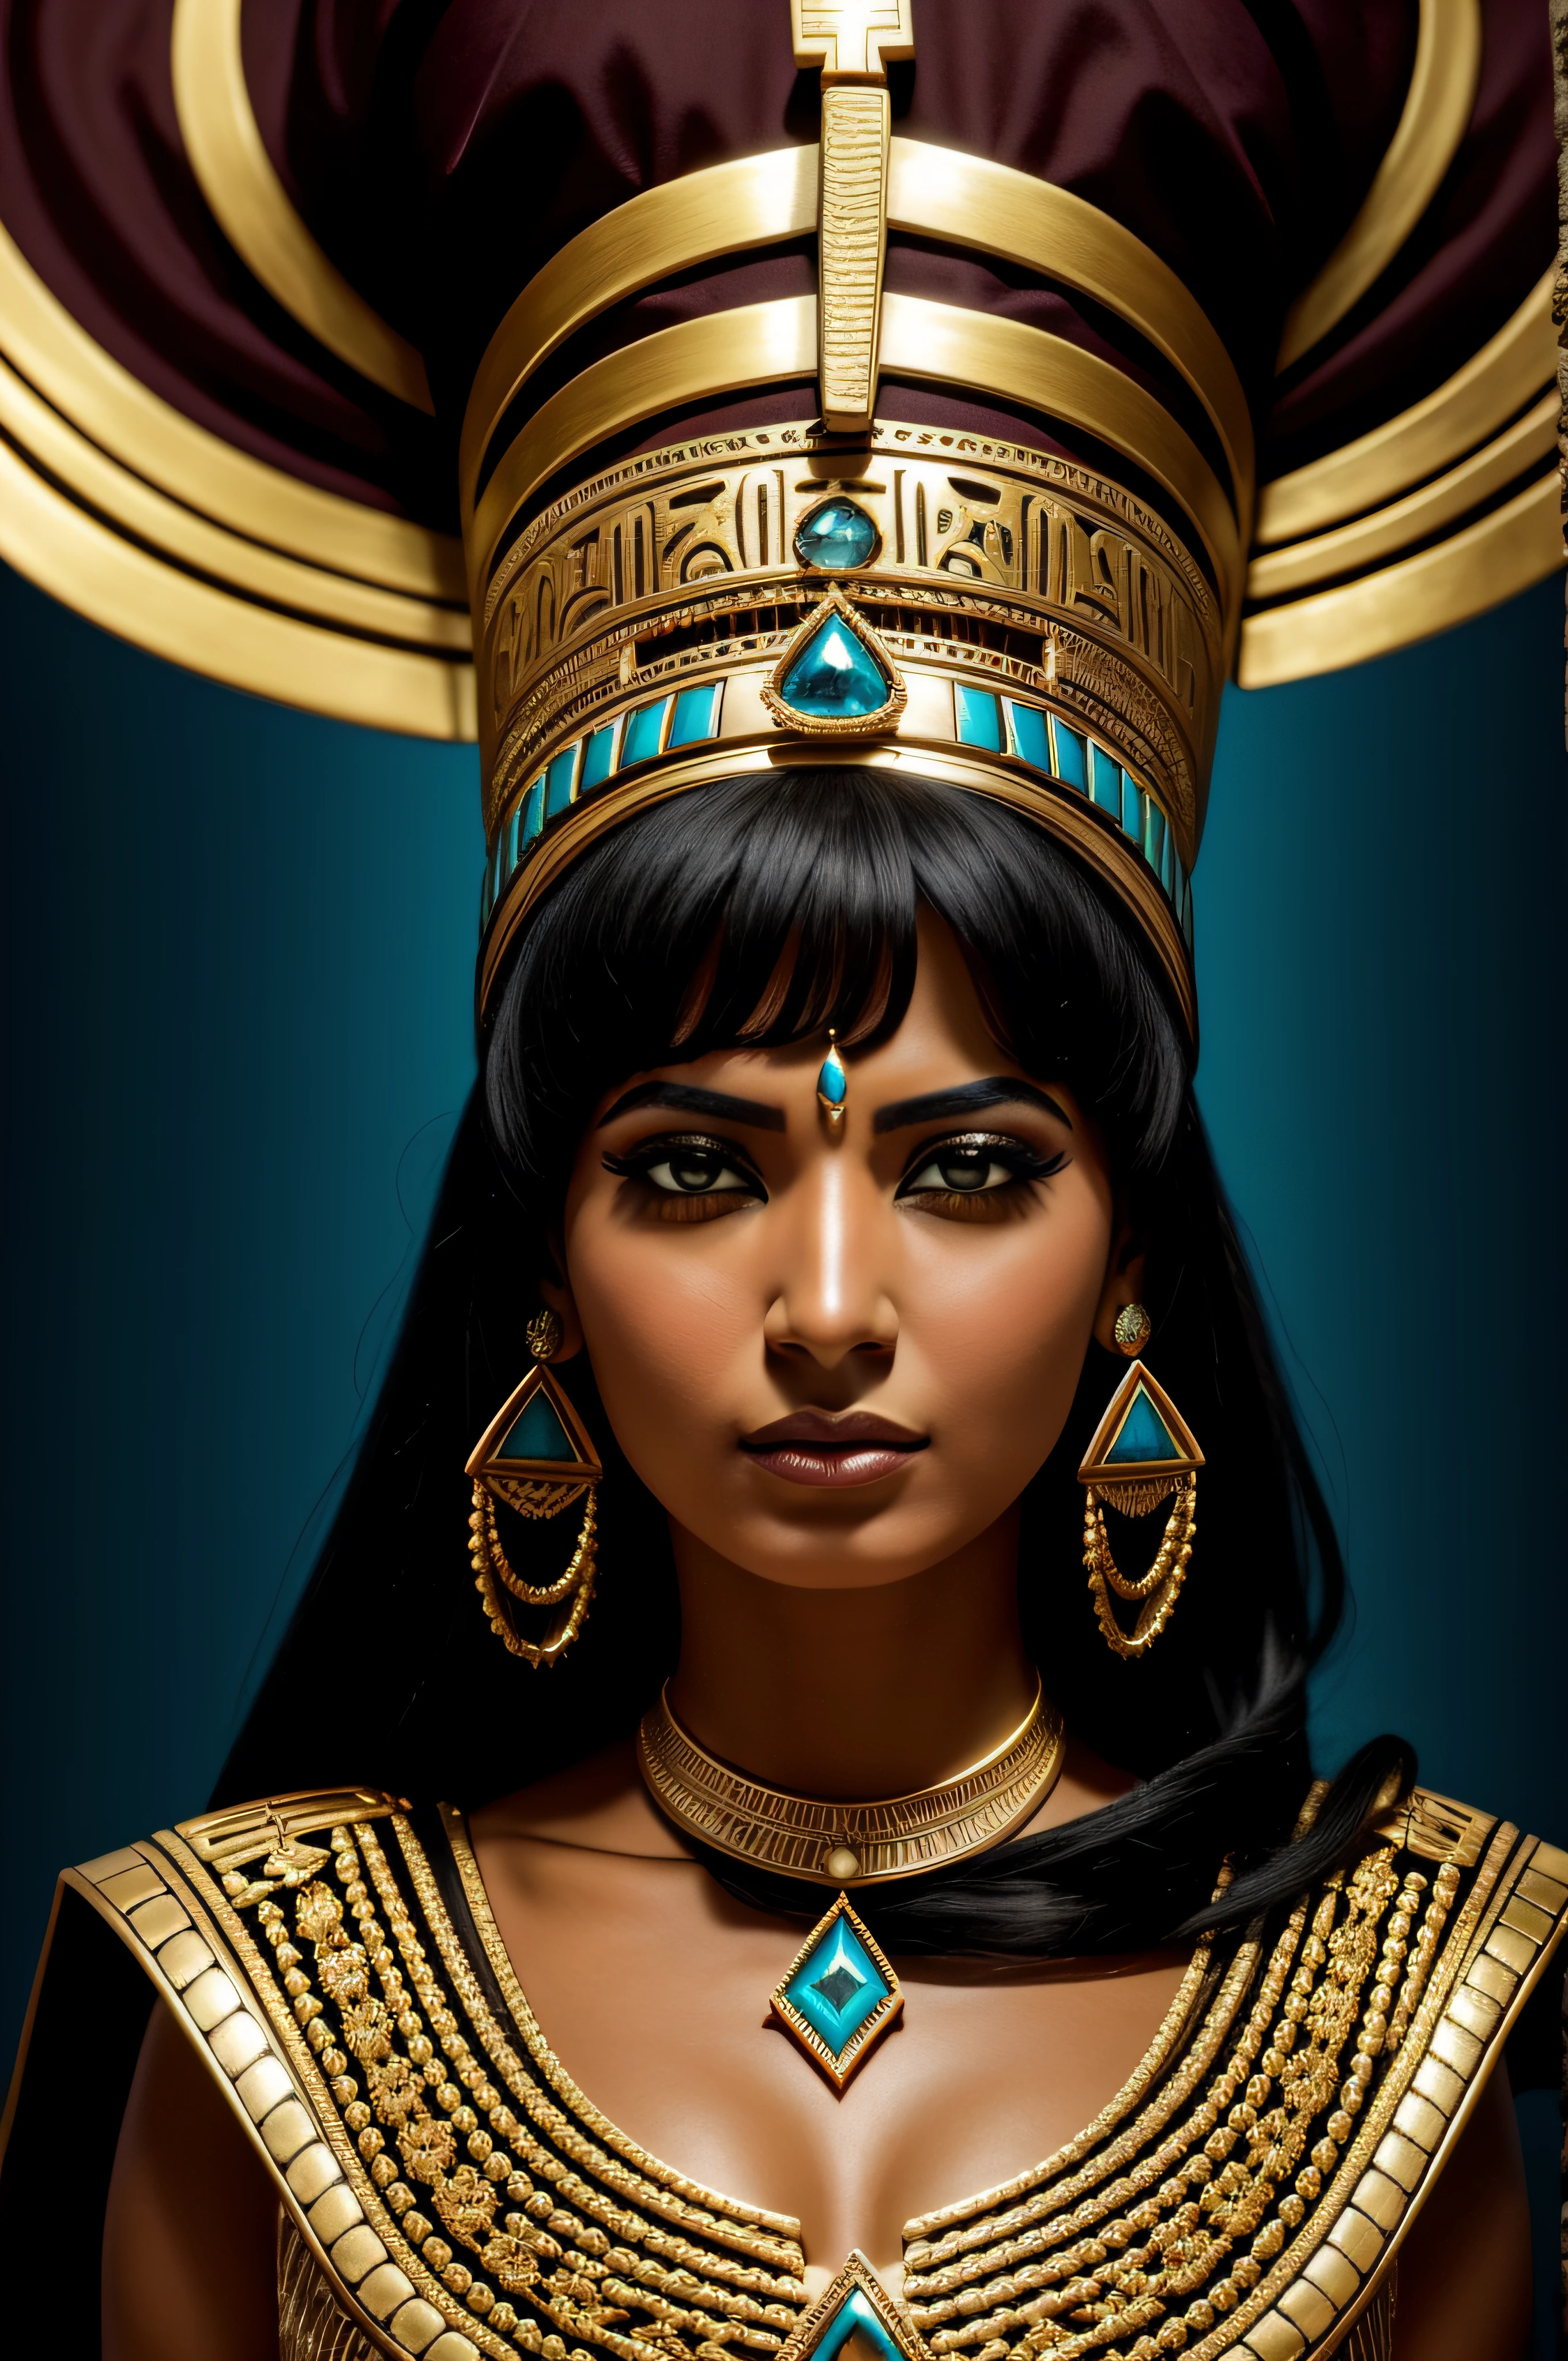 سيدة مصرية بالزي, تظاهر بالمجوهرات, بأسلوب الذهب الداكن والسماوي الداكن, مشاهد خيالية ملحمية, الصورة الجغرافية الوطنية, السلالات الشمالية والجنوبية, نظرة شديدة, حافة الضوء, تفاصيل مزخرفة